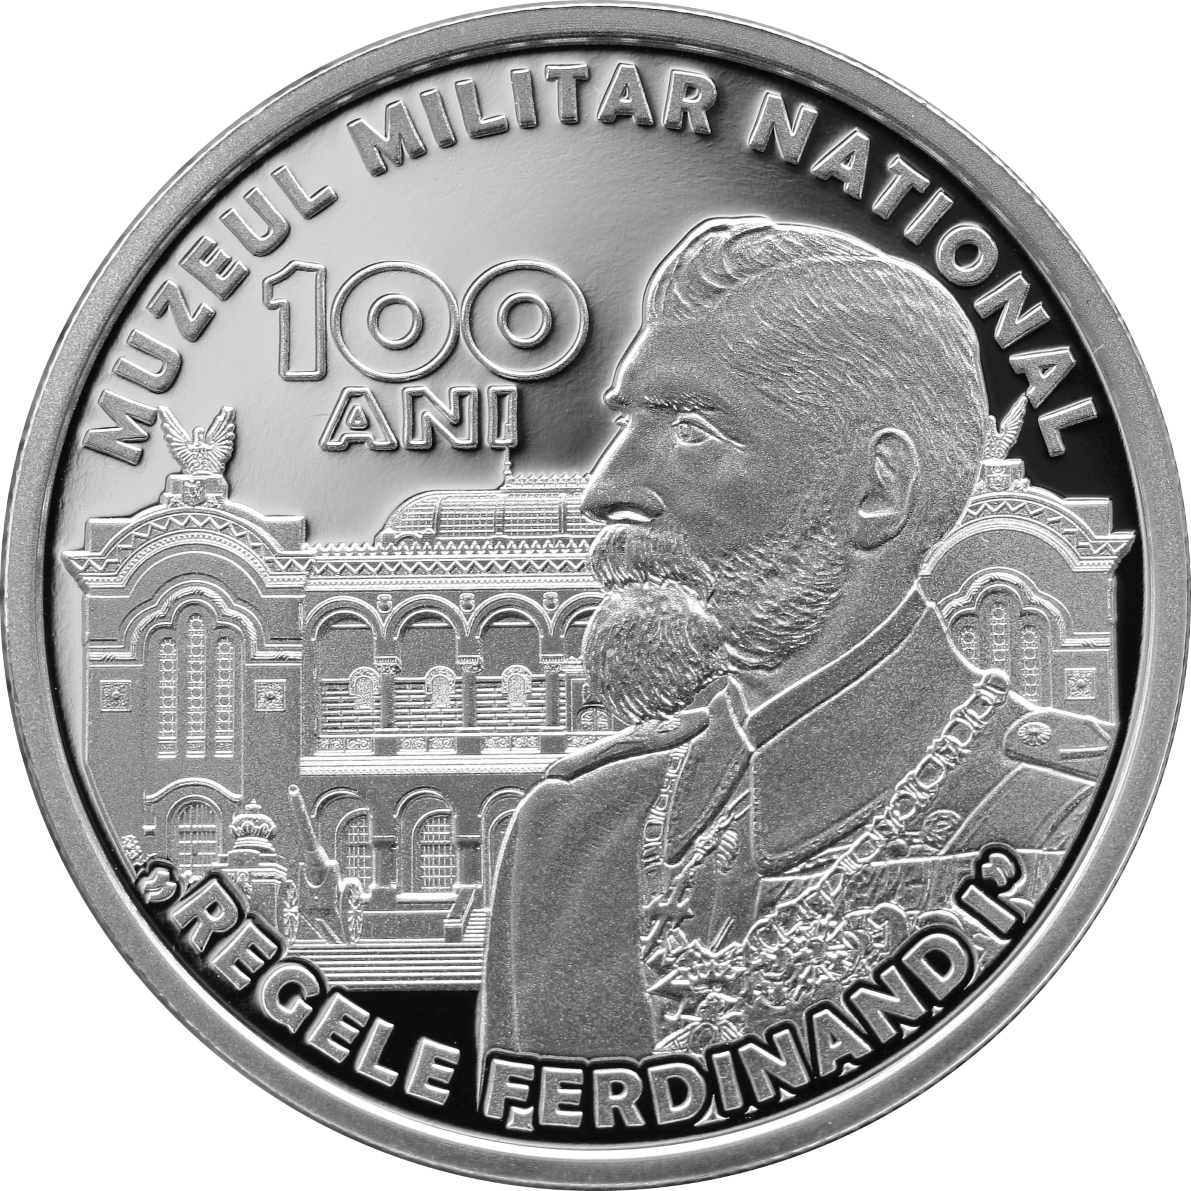 100 de ani de la înfiinţarea Muzeului Militar Naţional. BNR a lansat o monedă din argint - foto